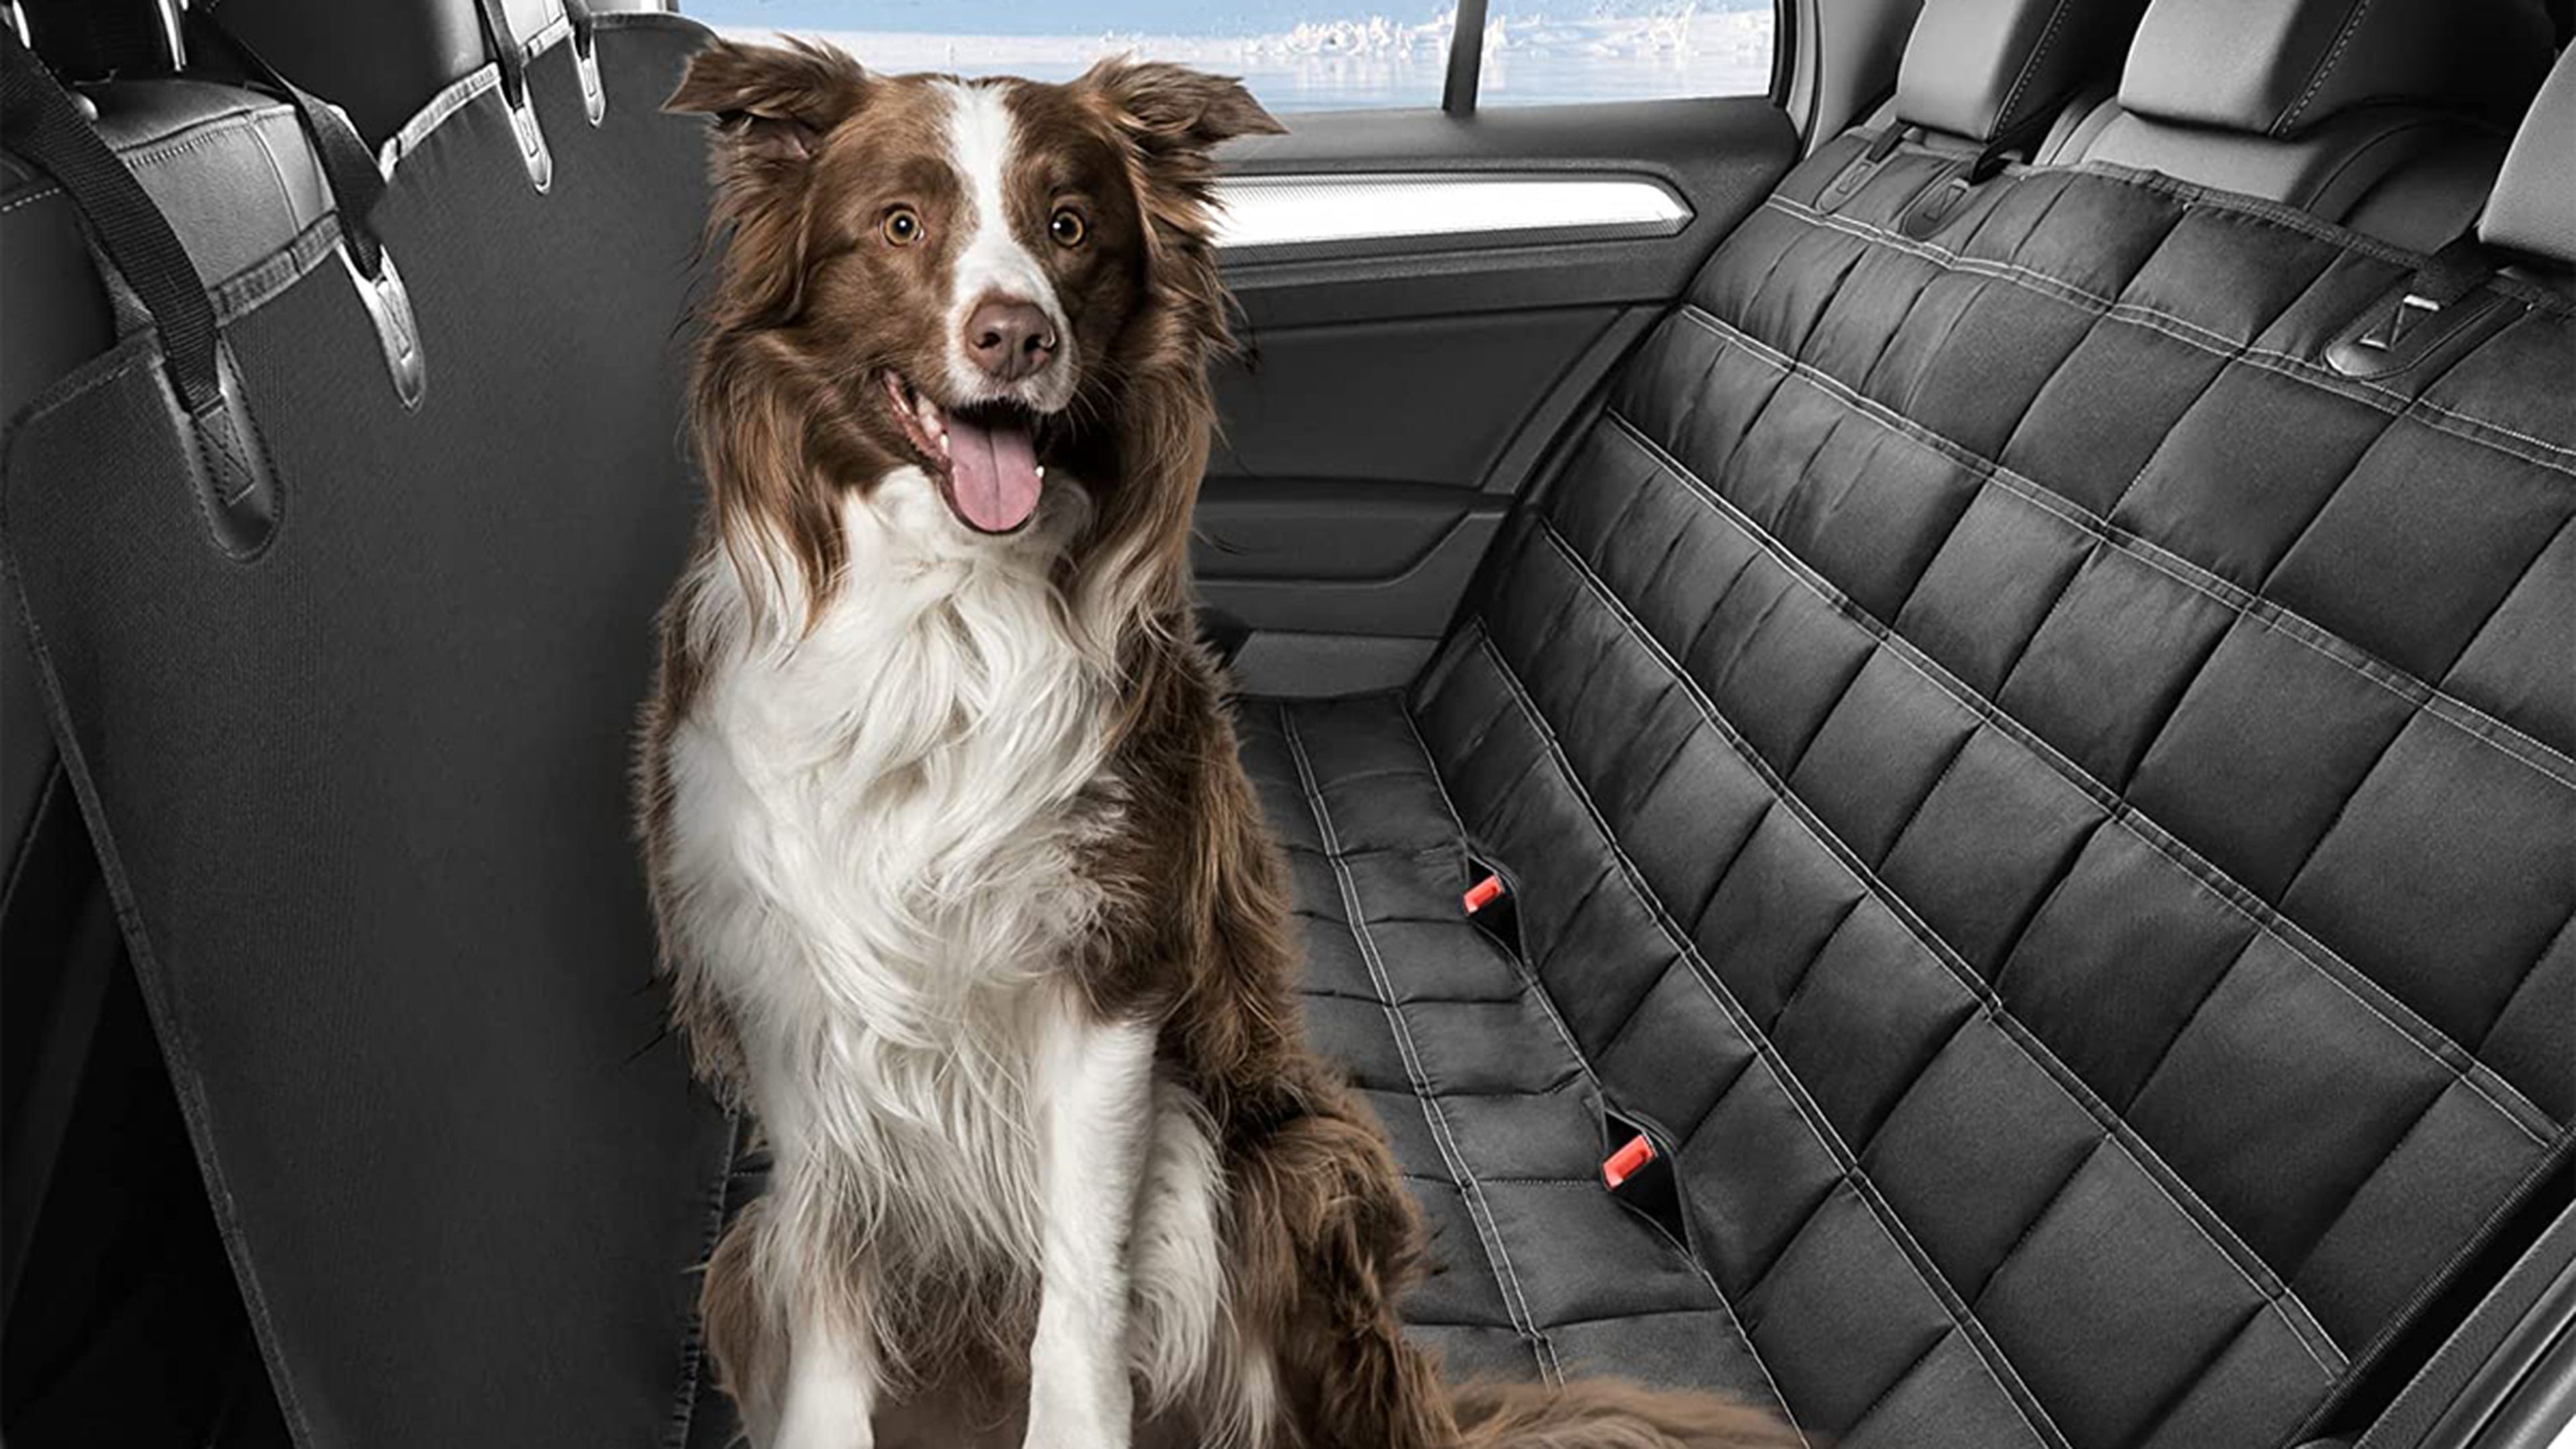 Cubierta Asiento Coche Perro, Funda Coche Perro Mascota Impermeable Proteja  su automóvil de rasguños, cabello o barro, hamaca resistente al agua para  perros de 4 capas para el asiento trasero : 